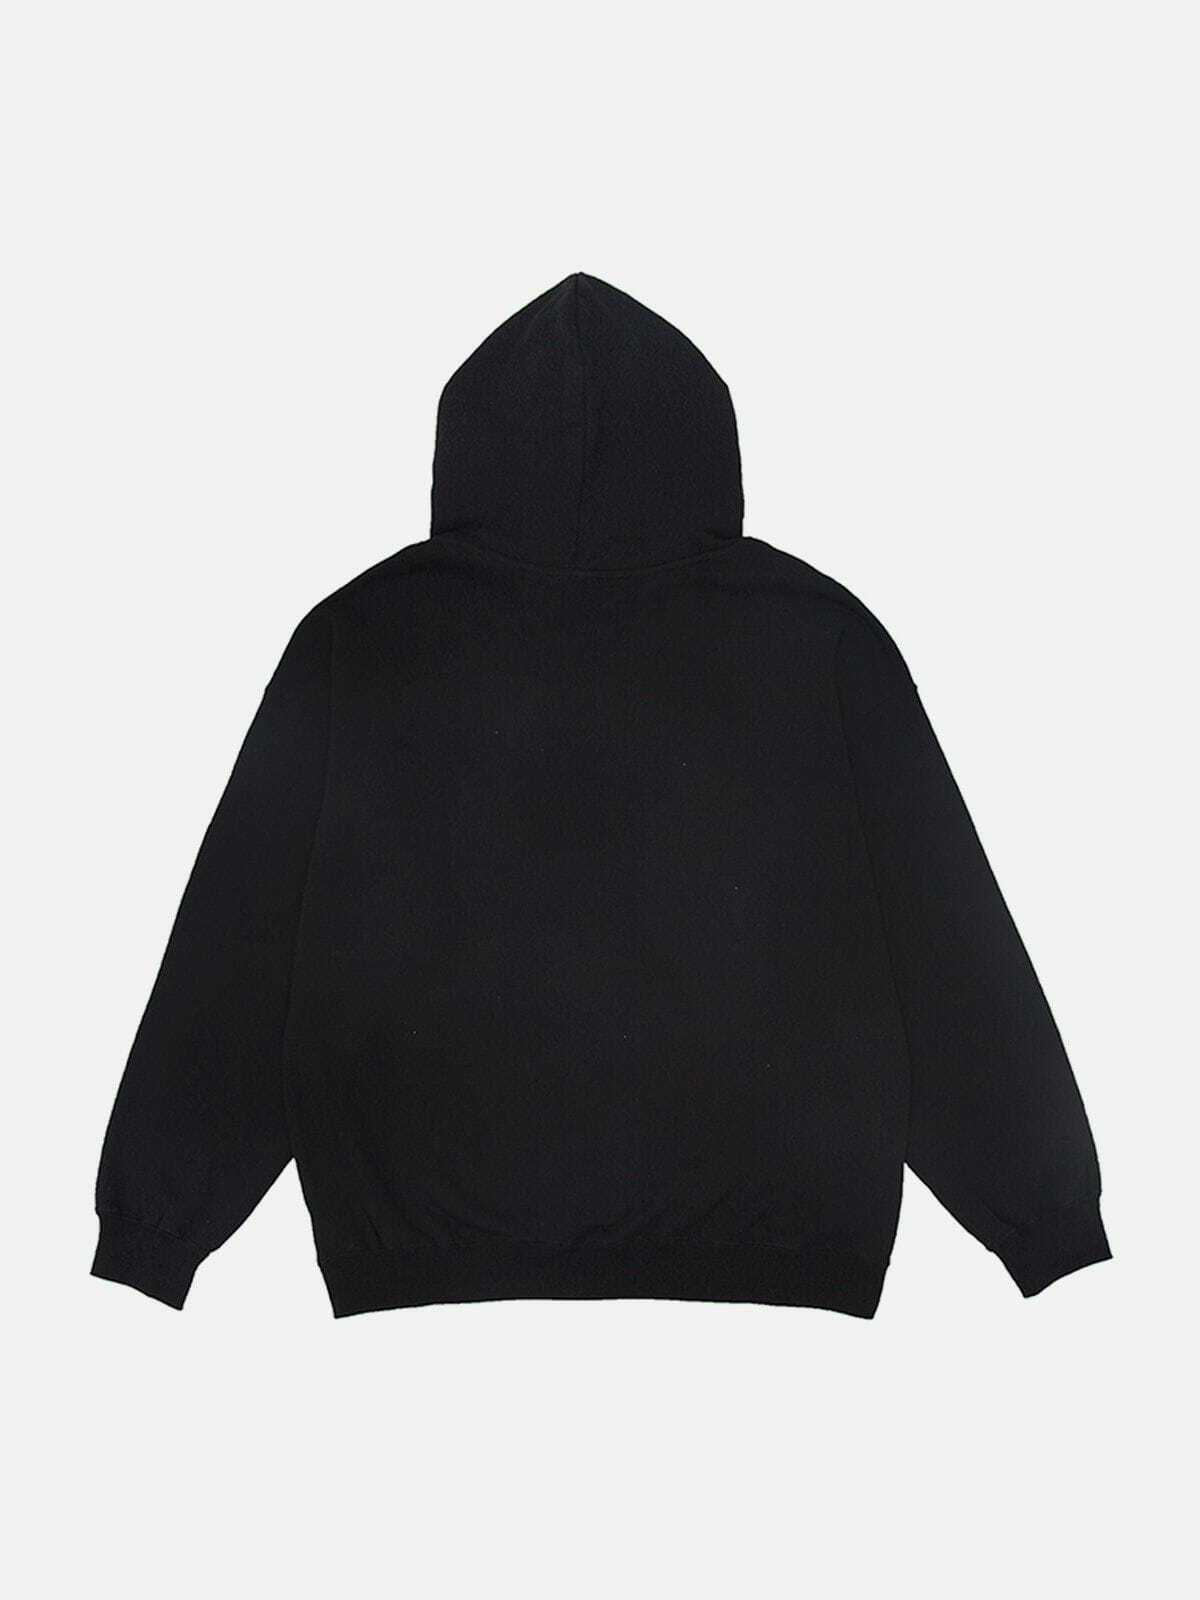 fortify' hoodie edgy & dynamic streetwear 8382